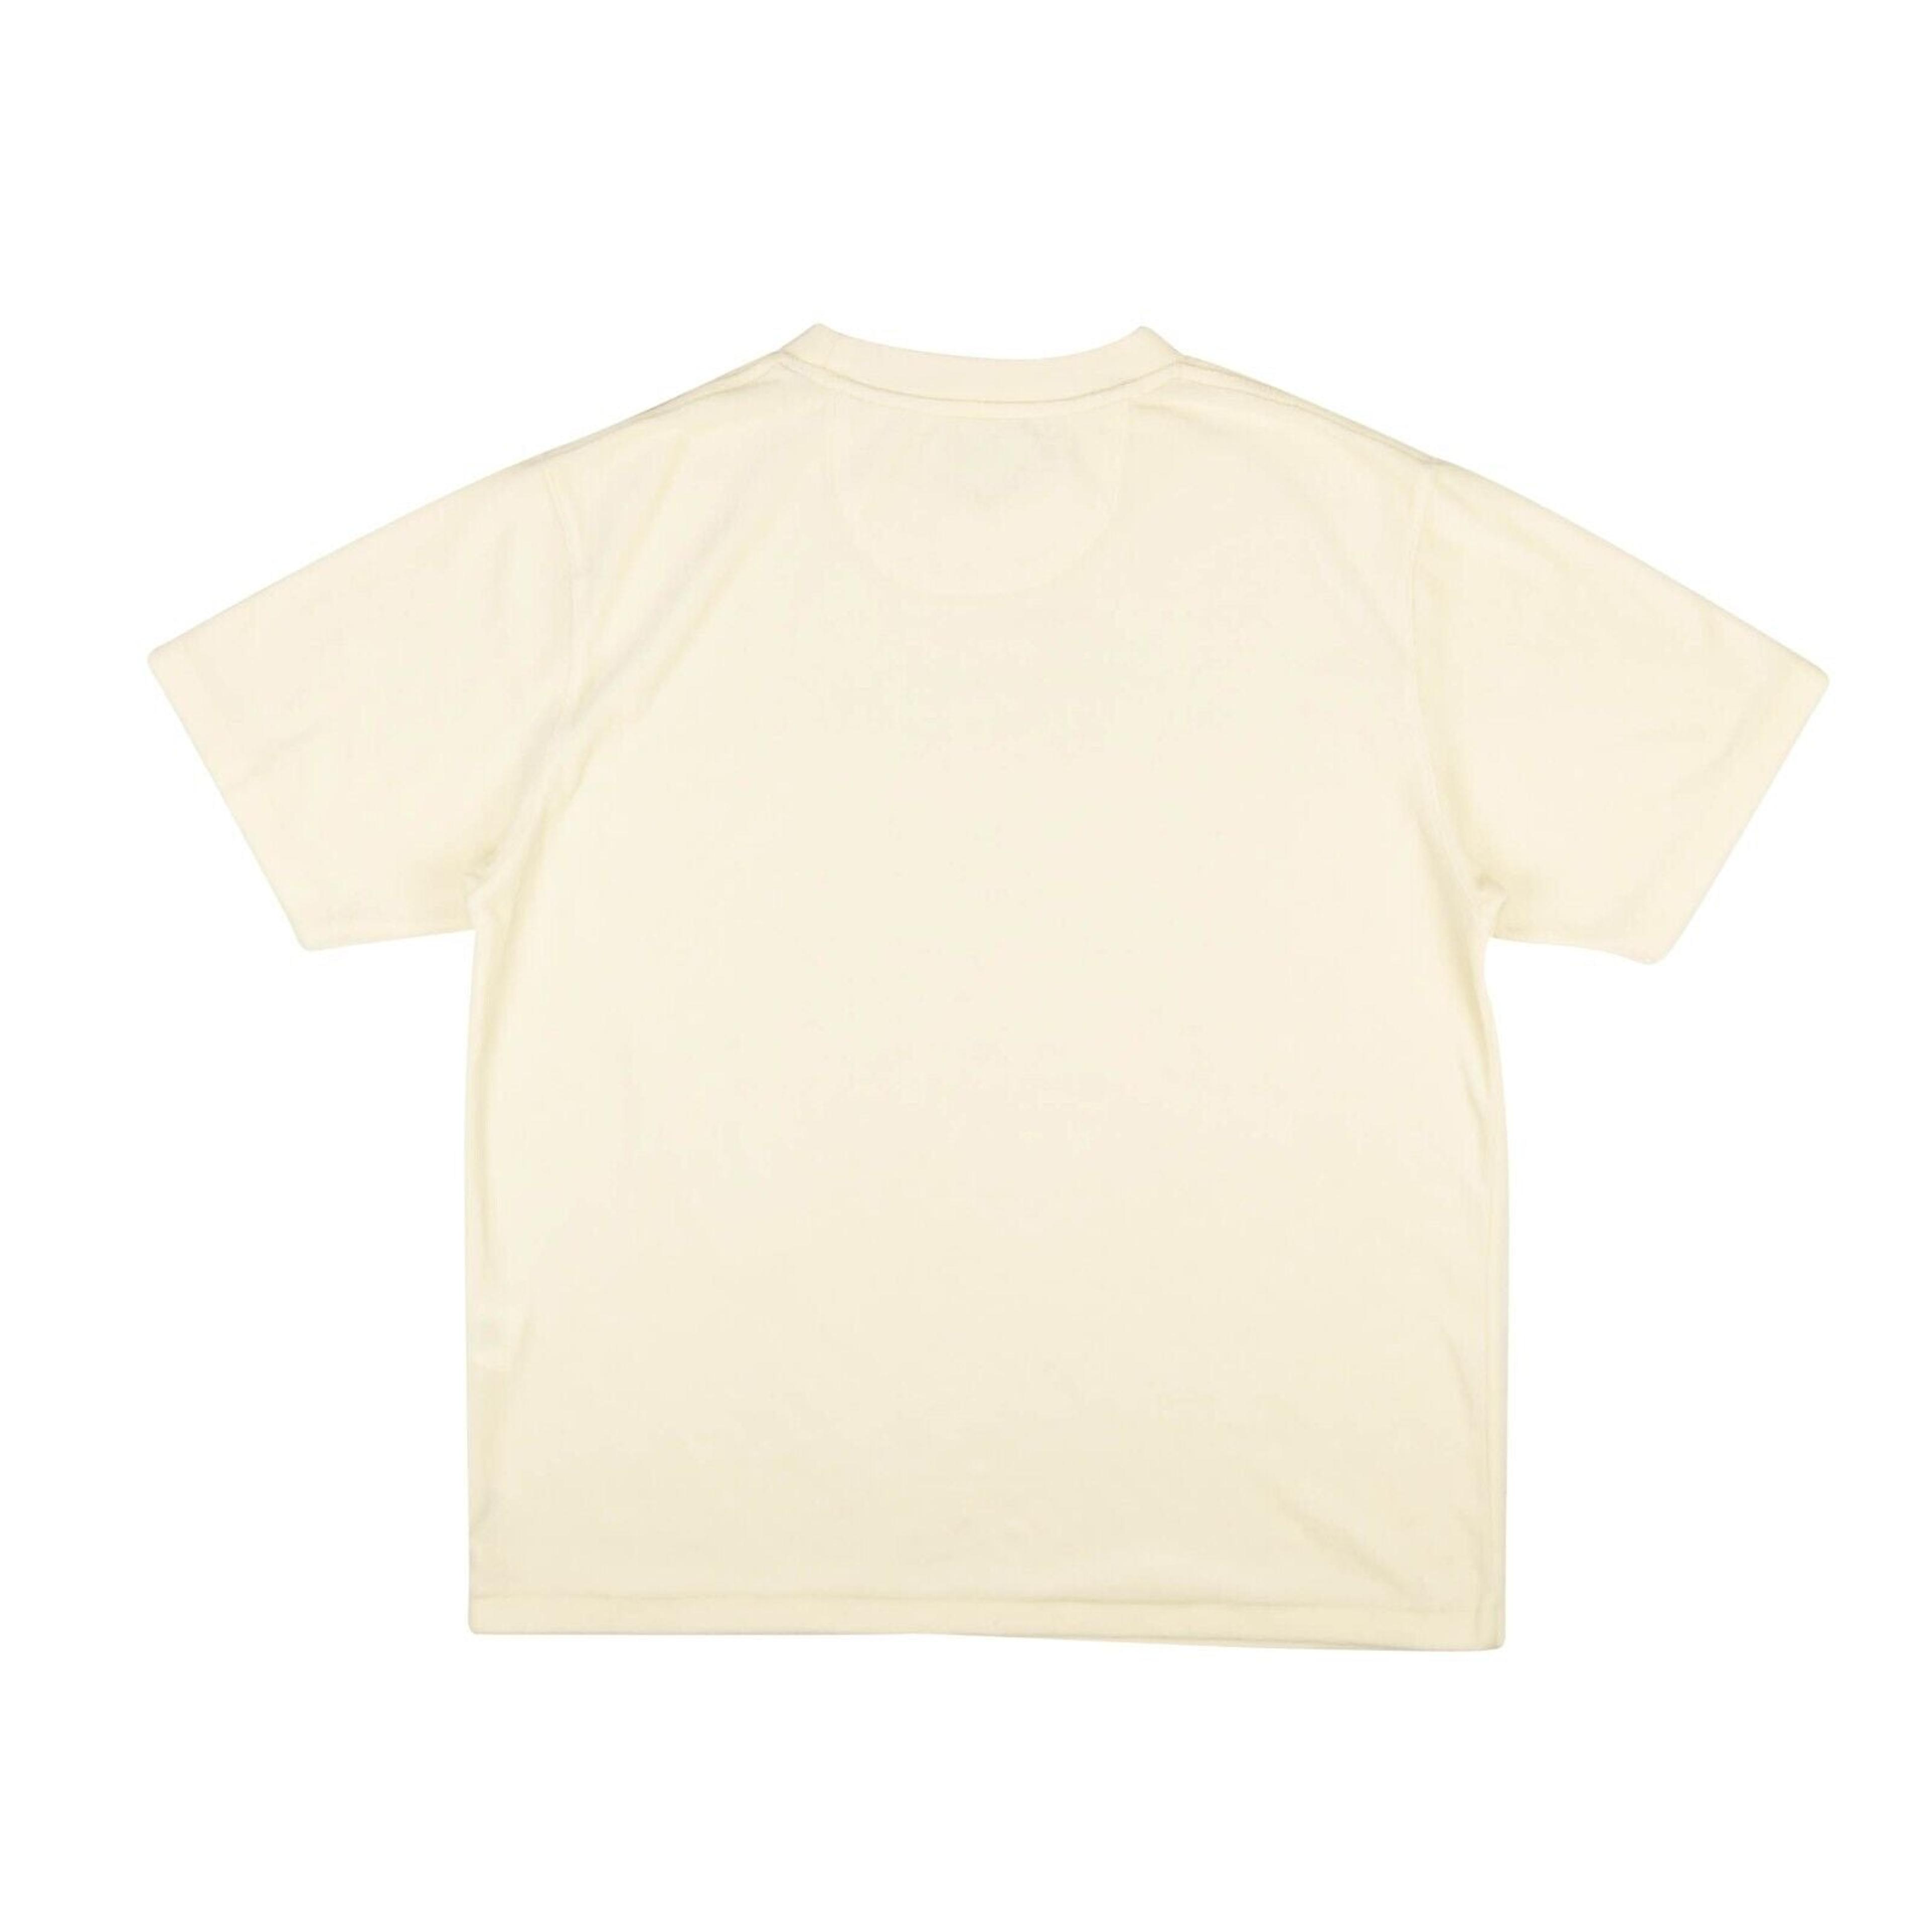 Alternate View 1 of Ivory White Velour Short Sleeve T-Shirt